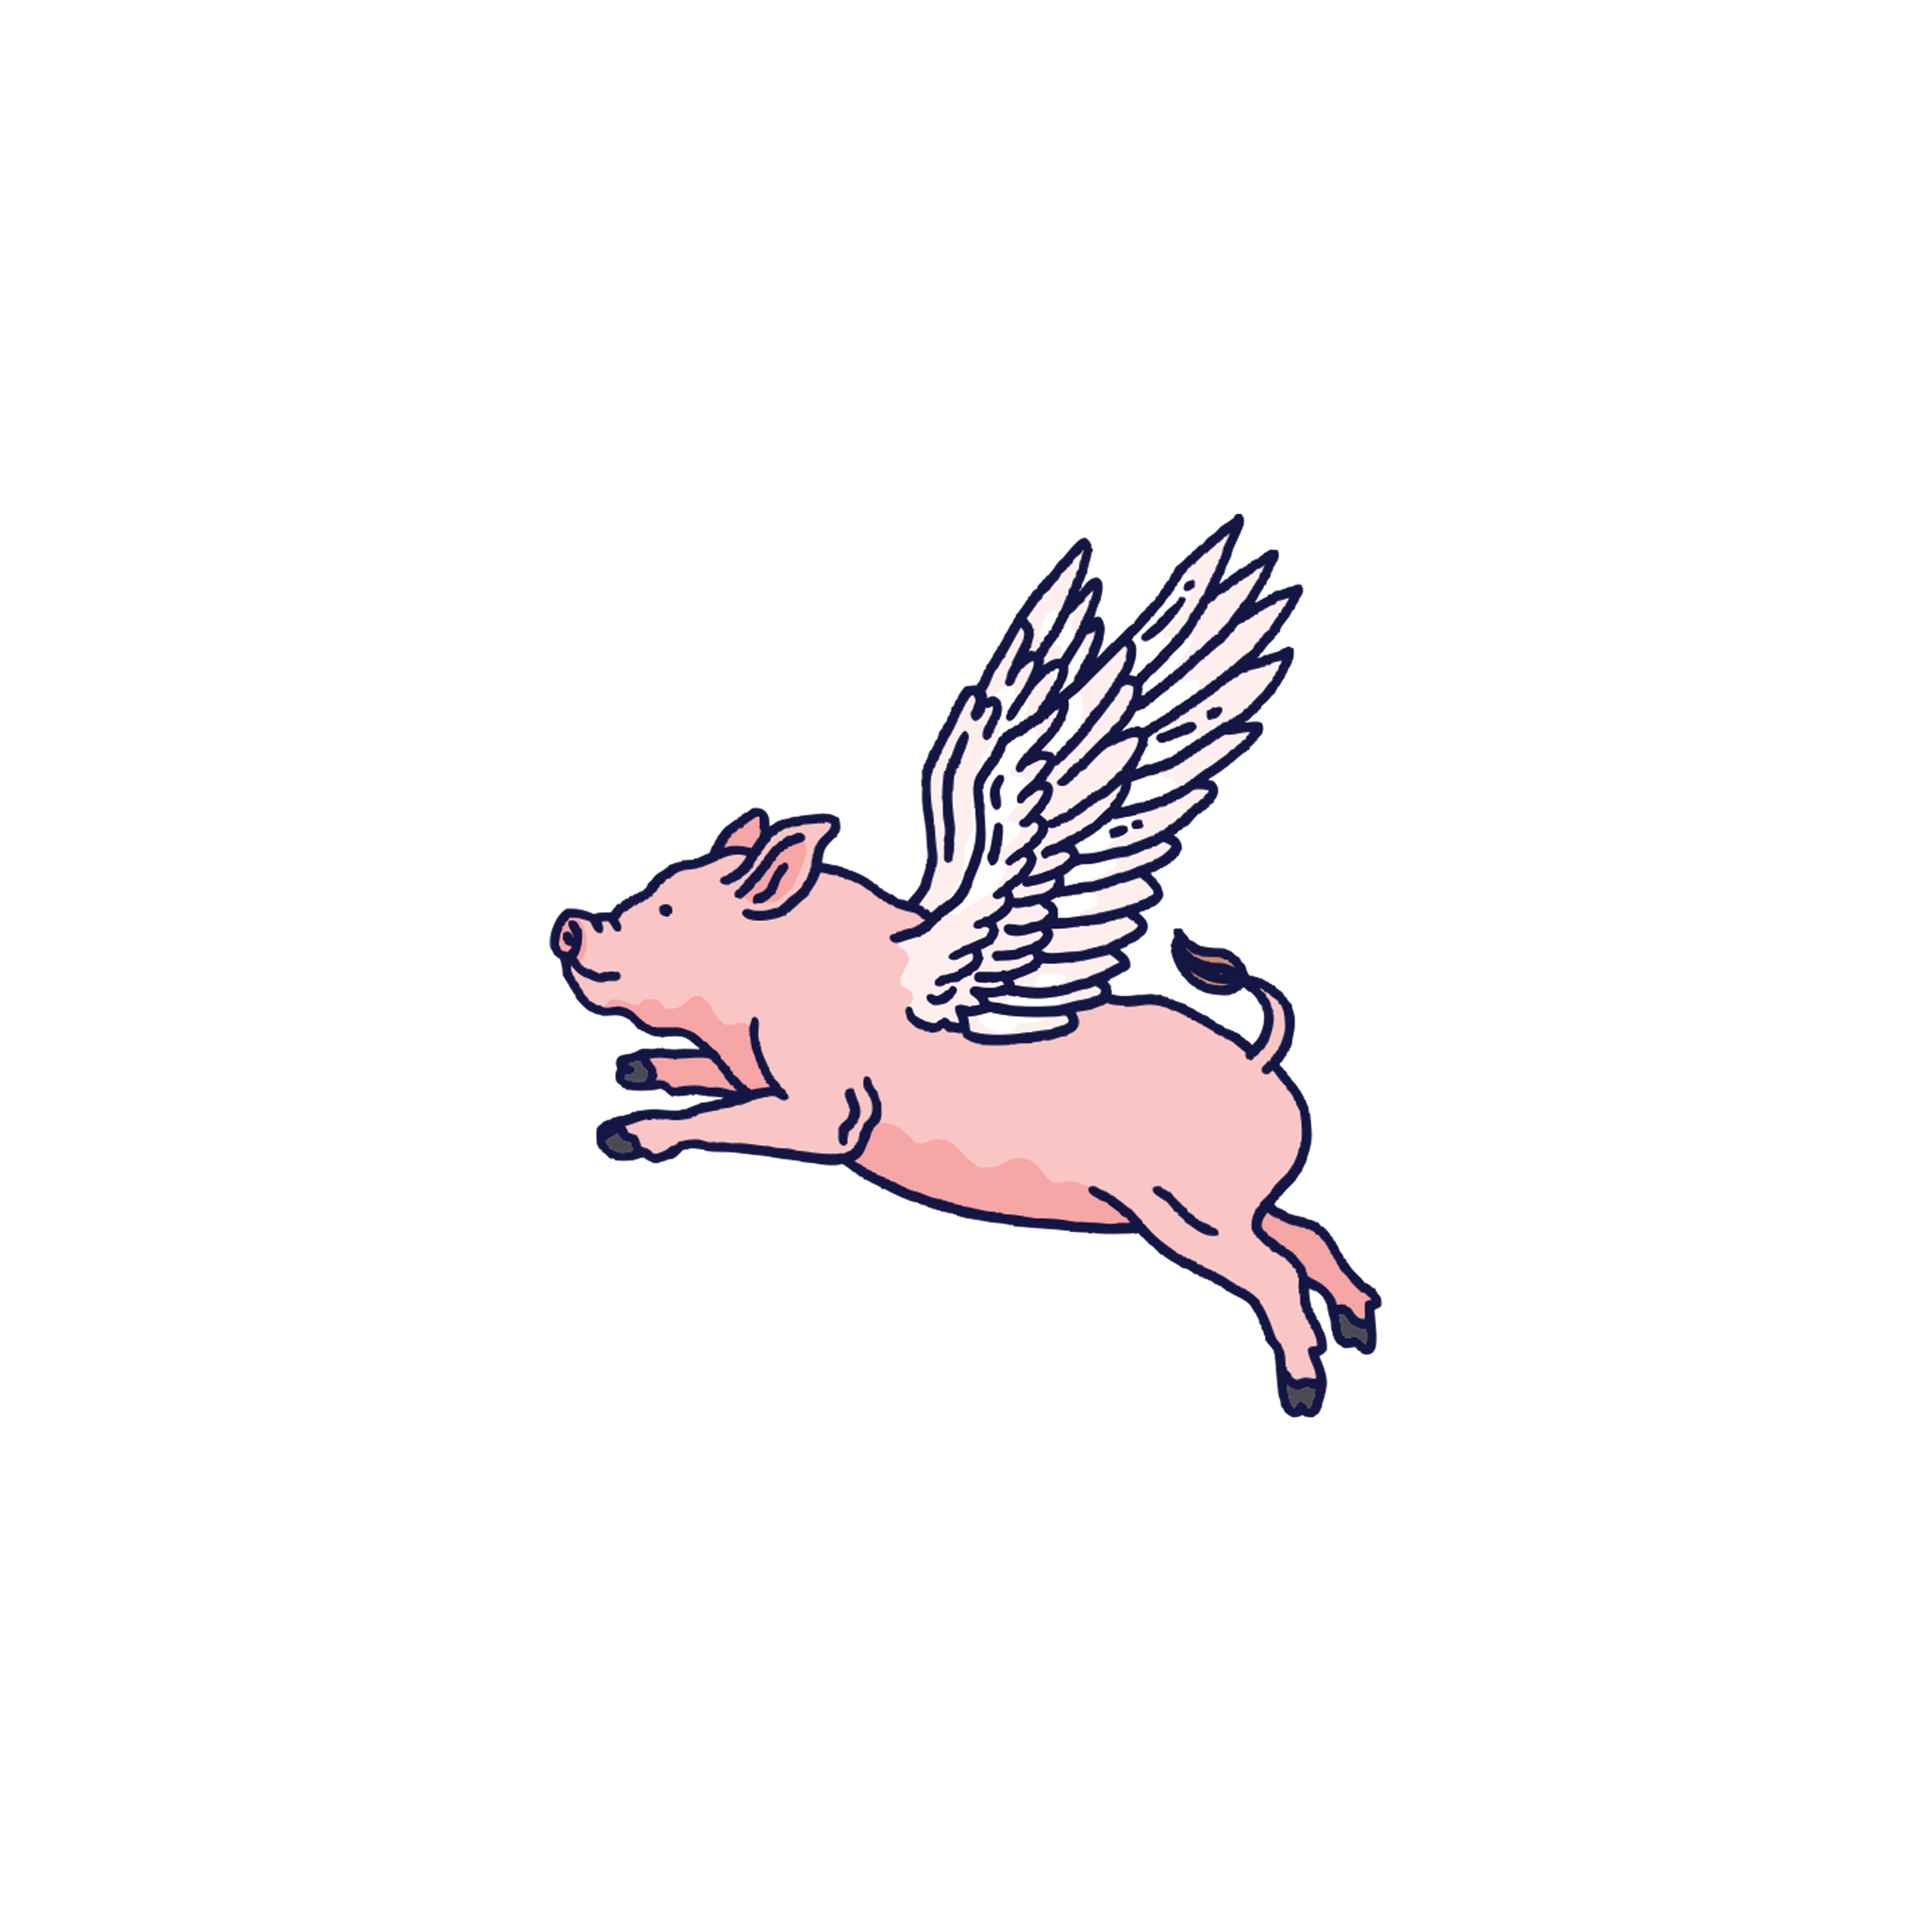 Premium Vector | Pig symbol tattoo design vector illustration